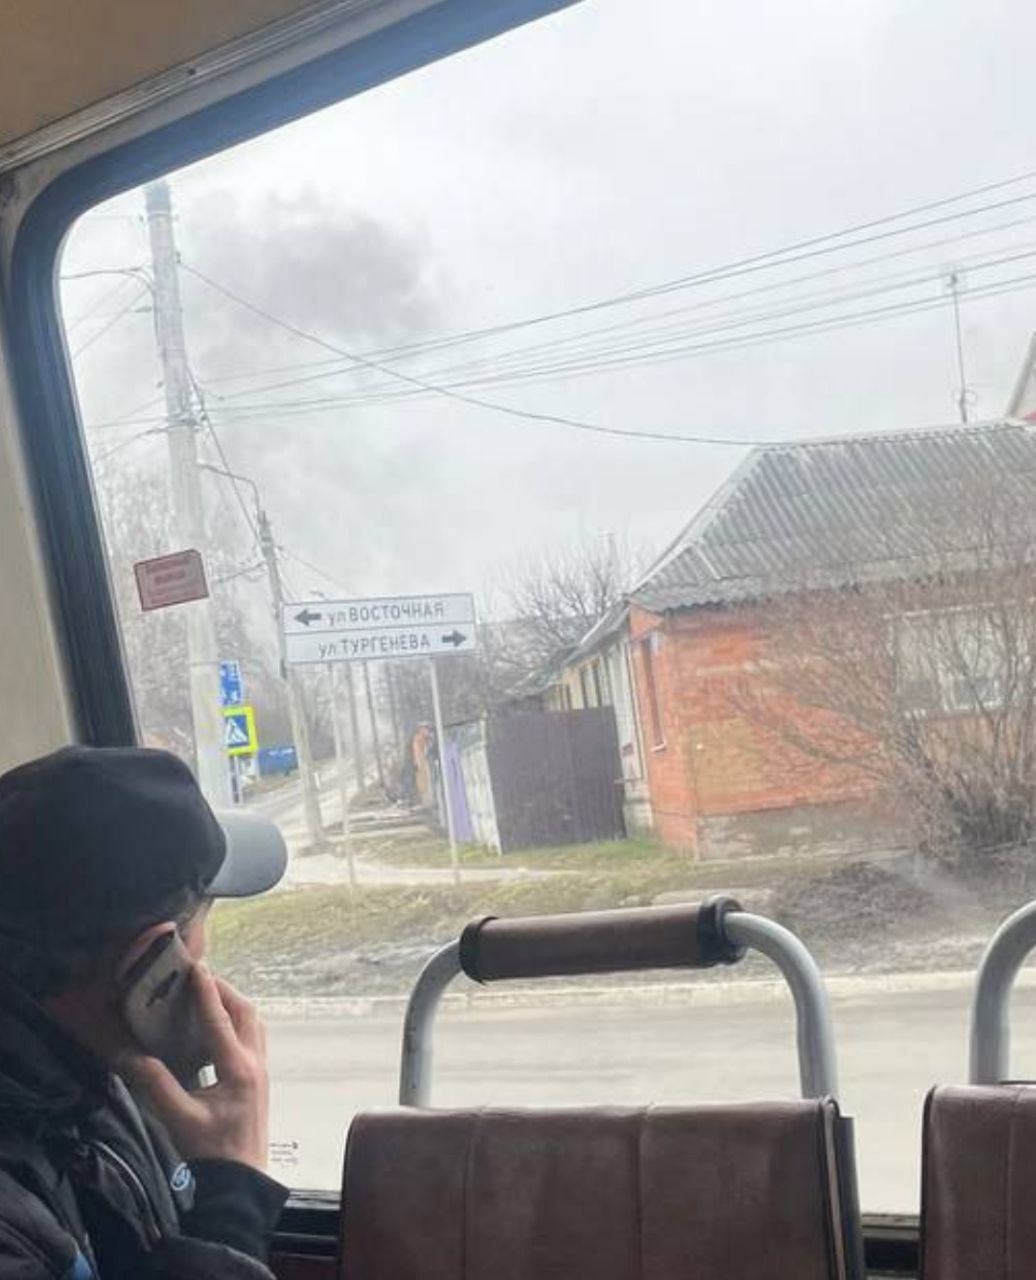 Снова российская ПВО "дала сбой"? В Белгороде пожаловались на мощные взрывы, есть погибшие и раненые. Фото и видео